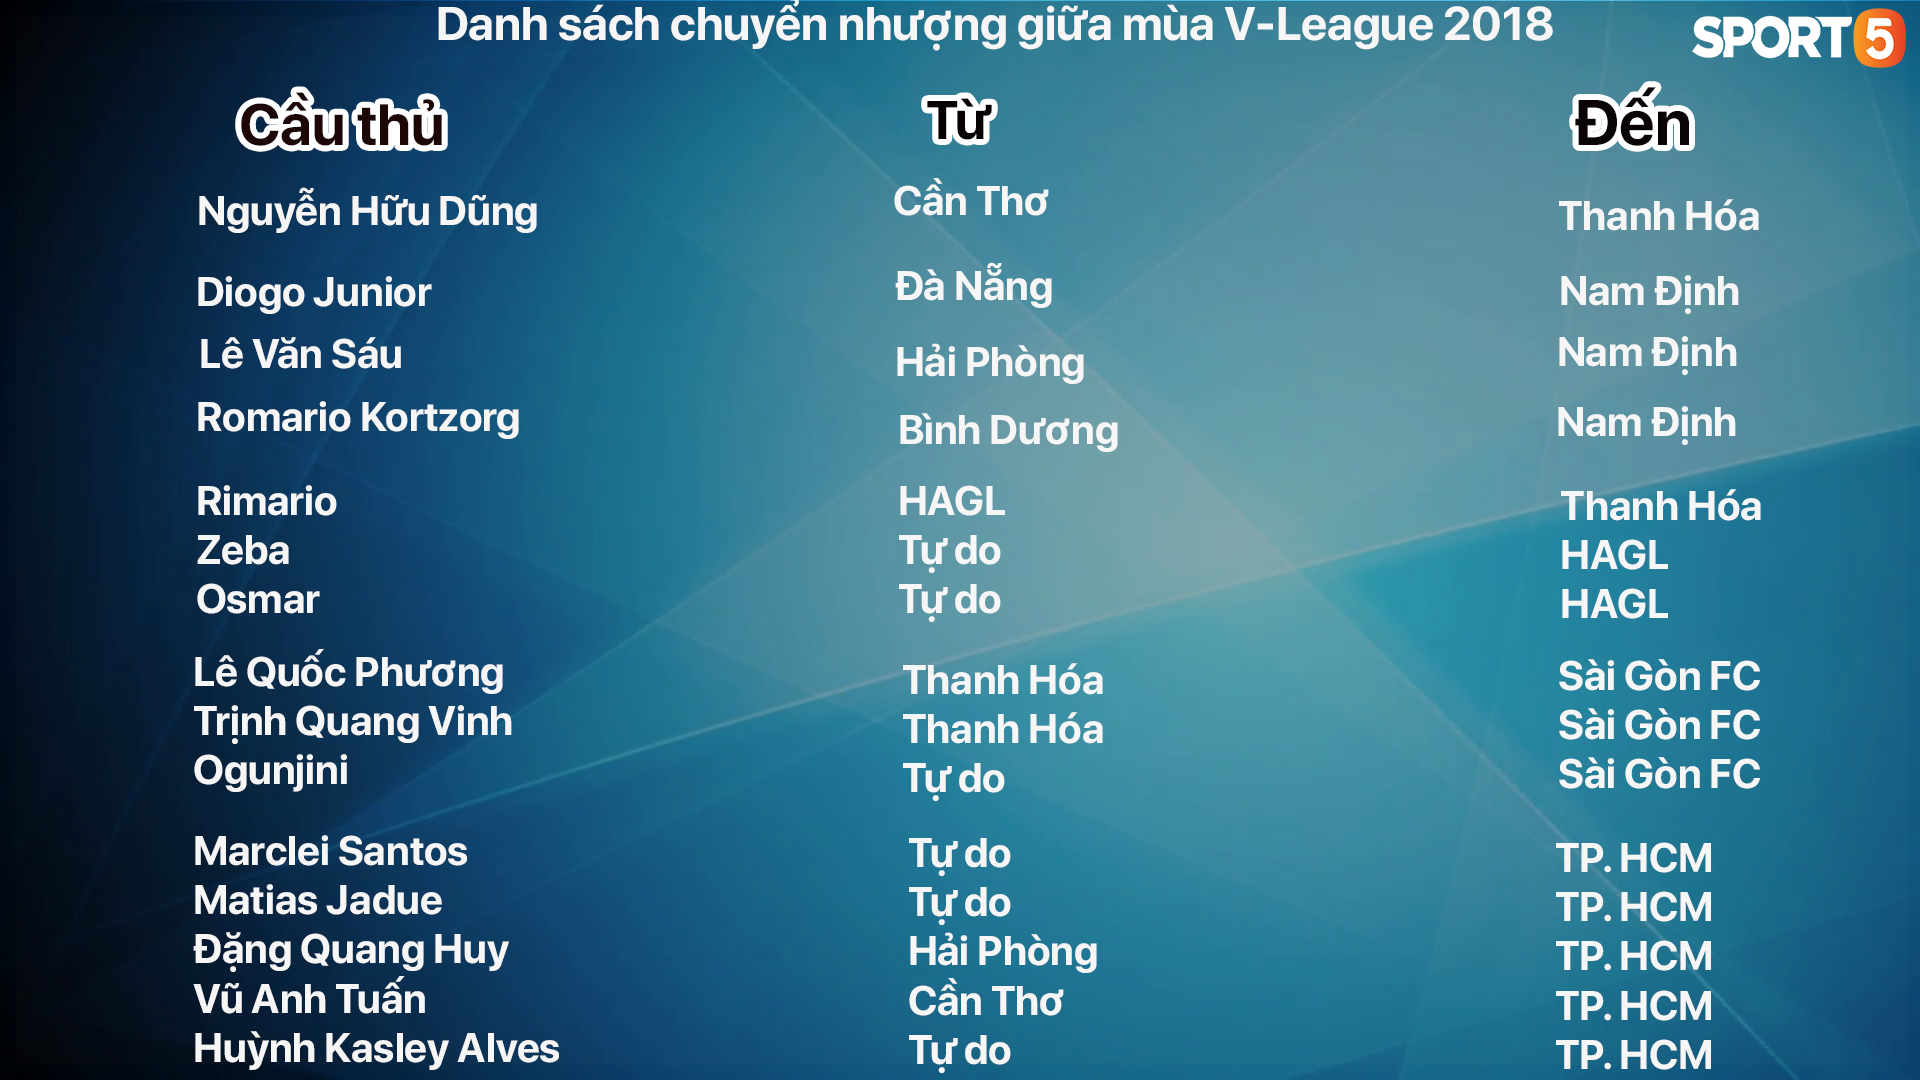 Chuyển nhượng giữa mùa V-League: Sài Thành chạy đua “vũ trang” để thoát hiểm - Ảnh 4.